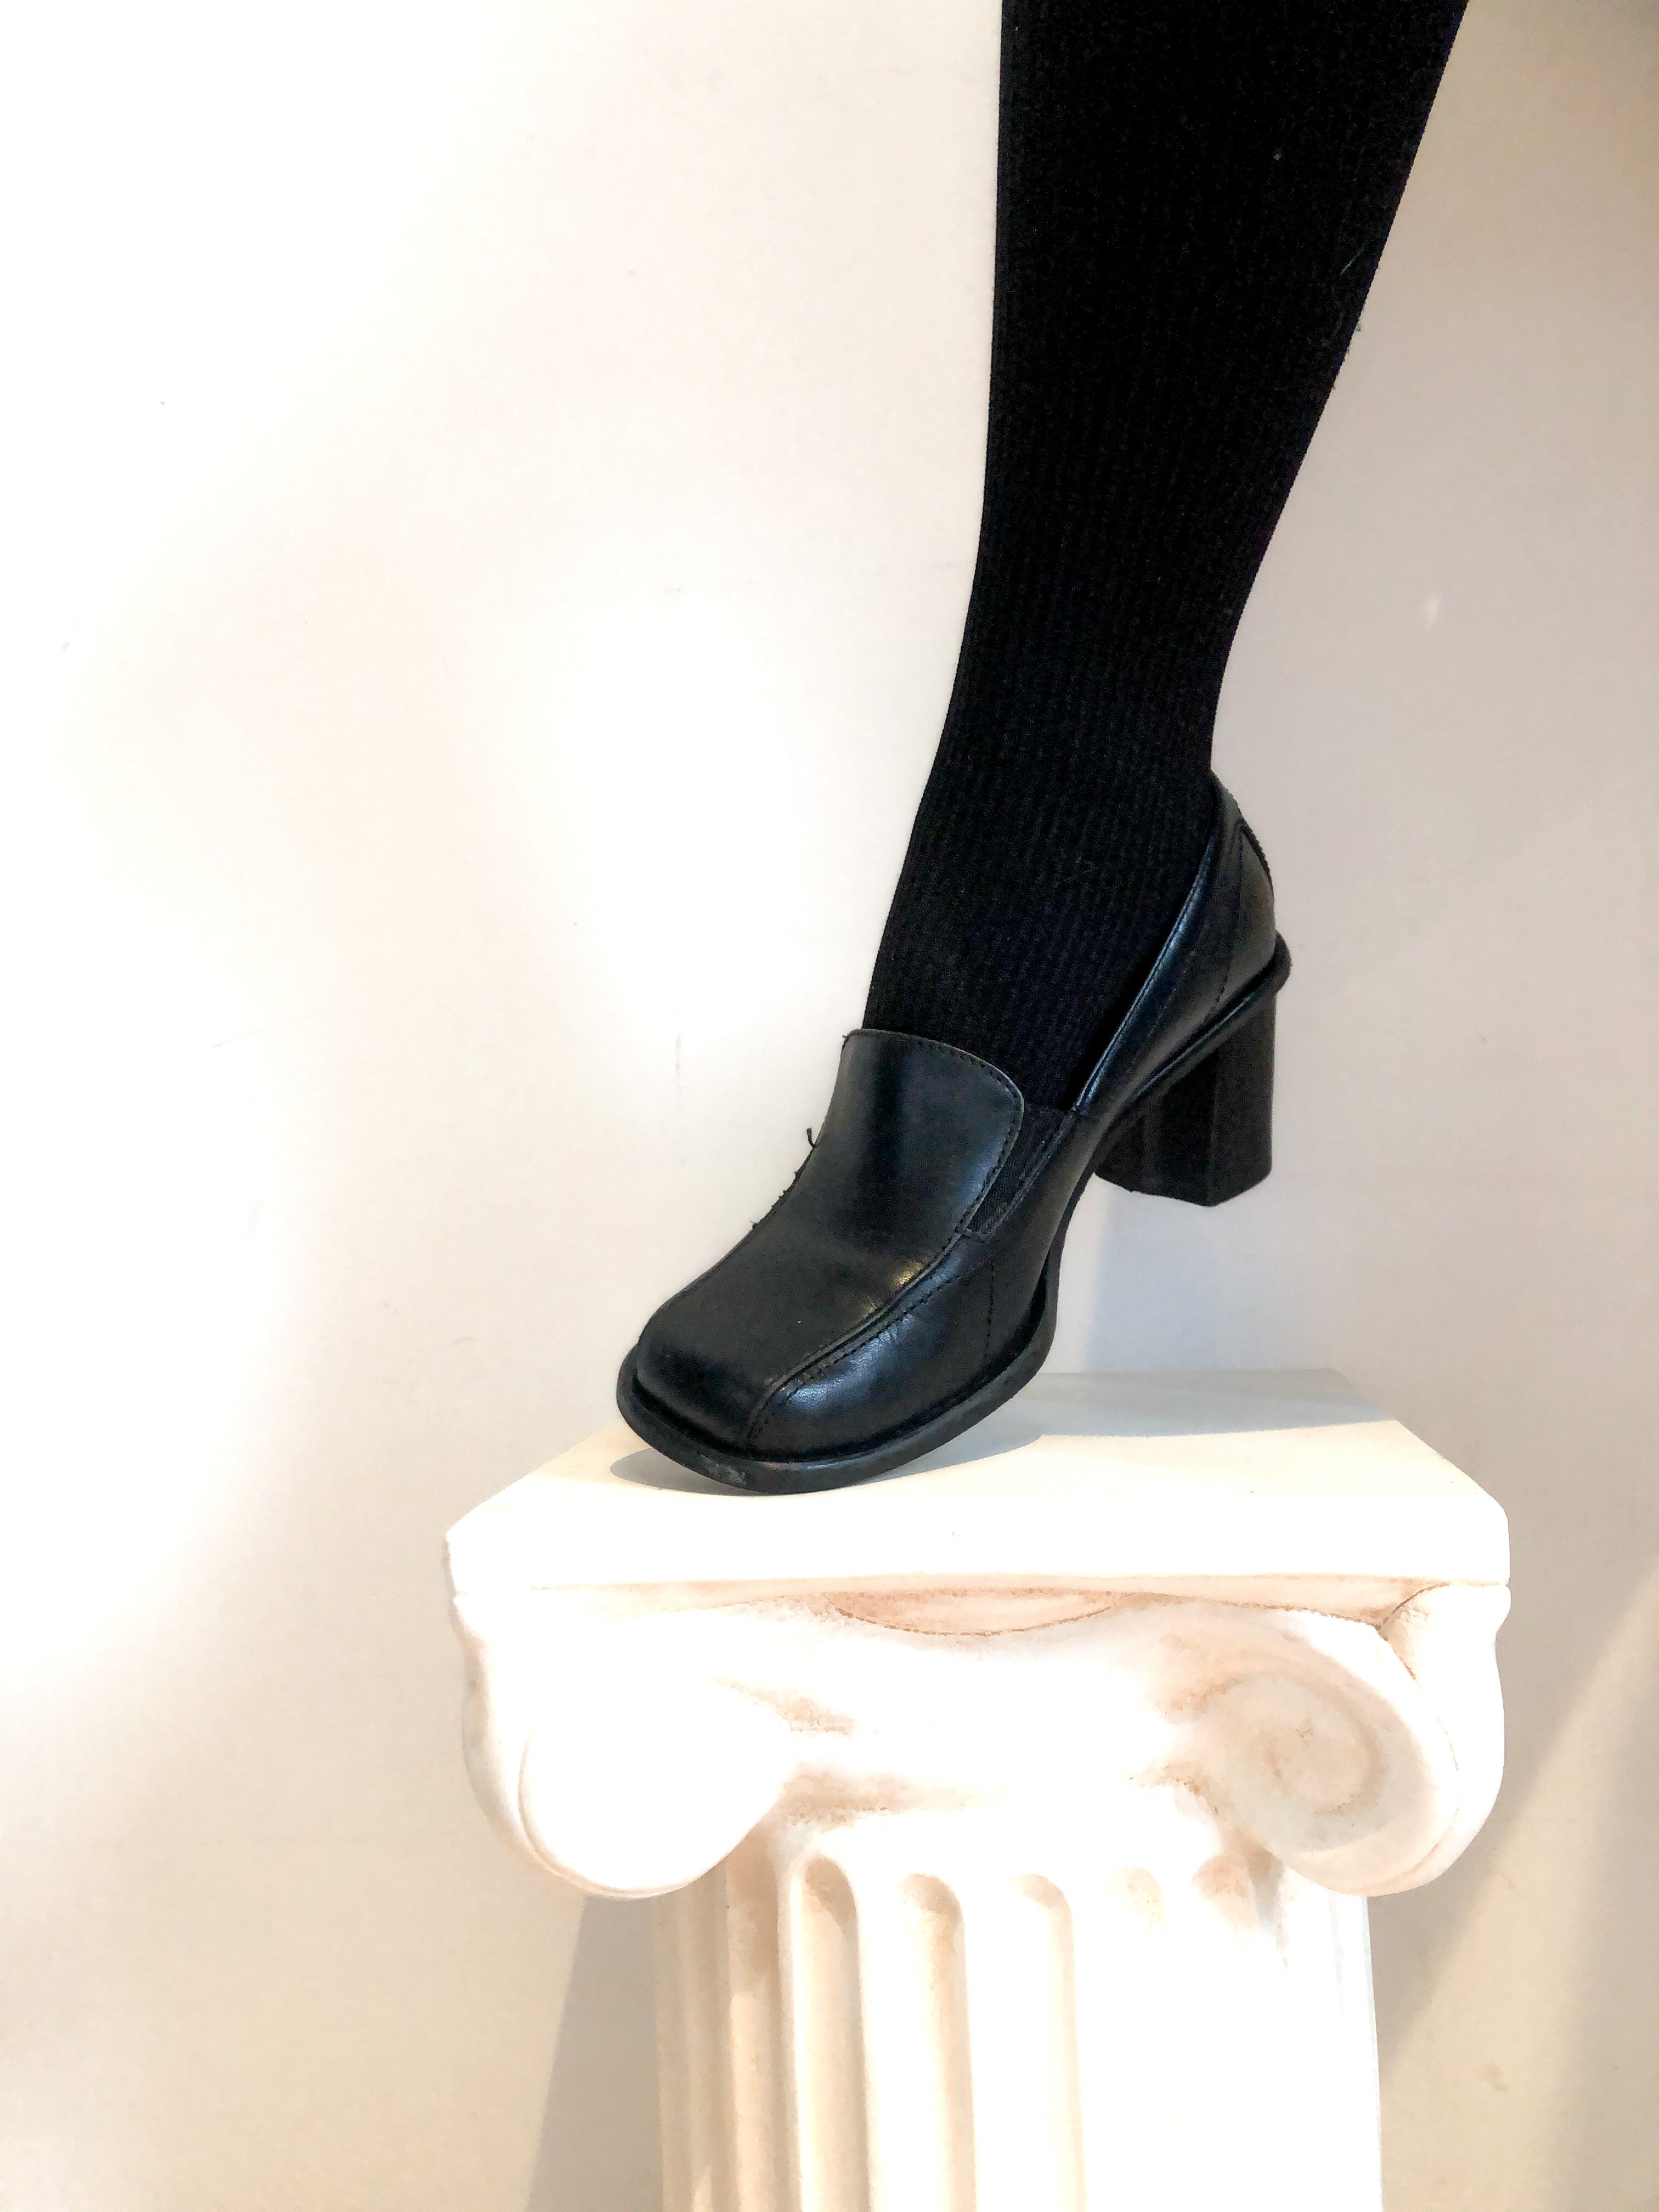 Black Loafer Chunky Heel Shoe, US Size 7 Women's, Vintag – Covet Vintage